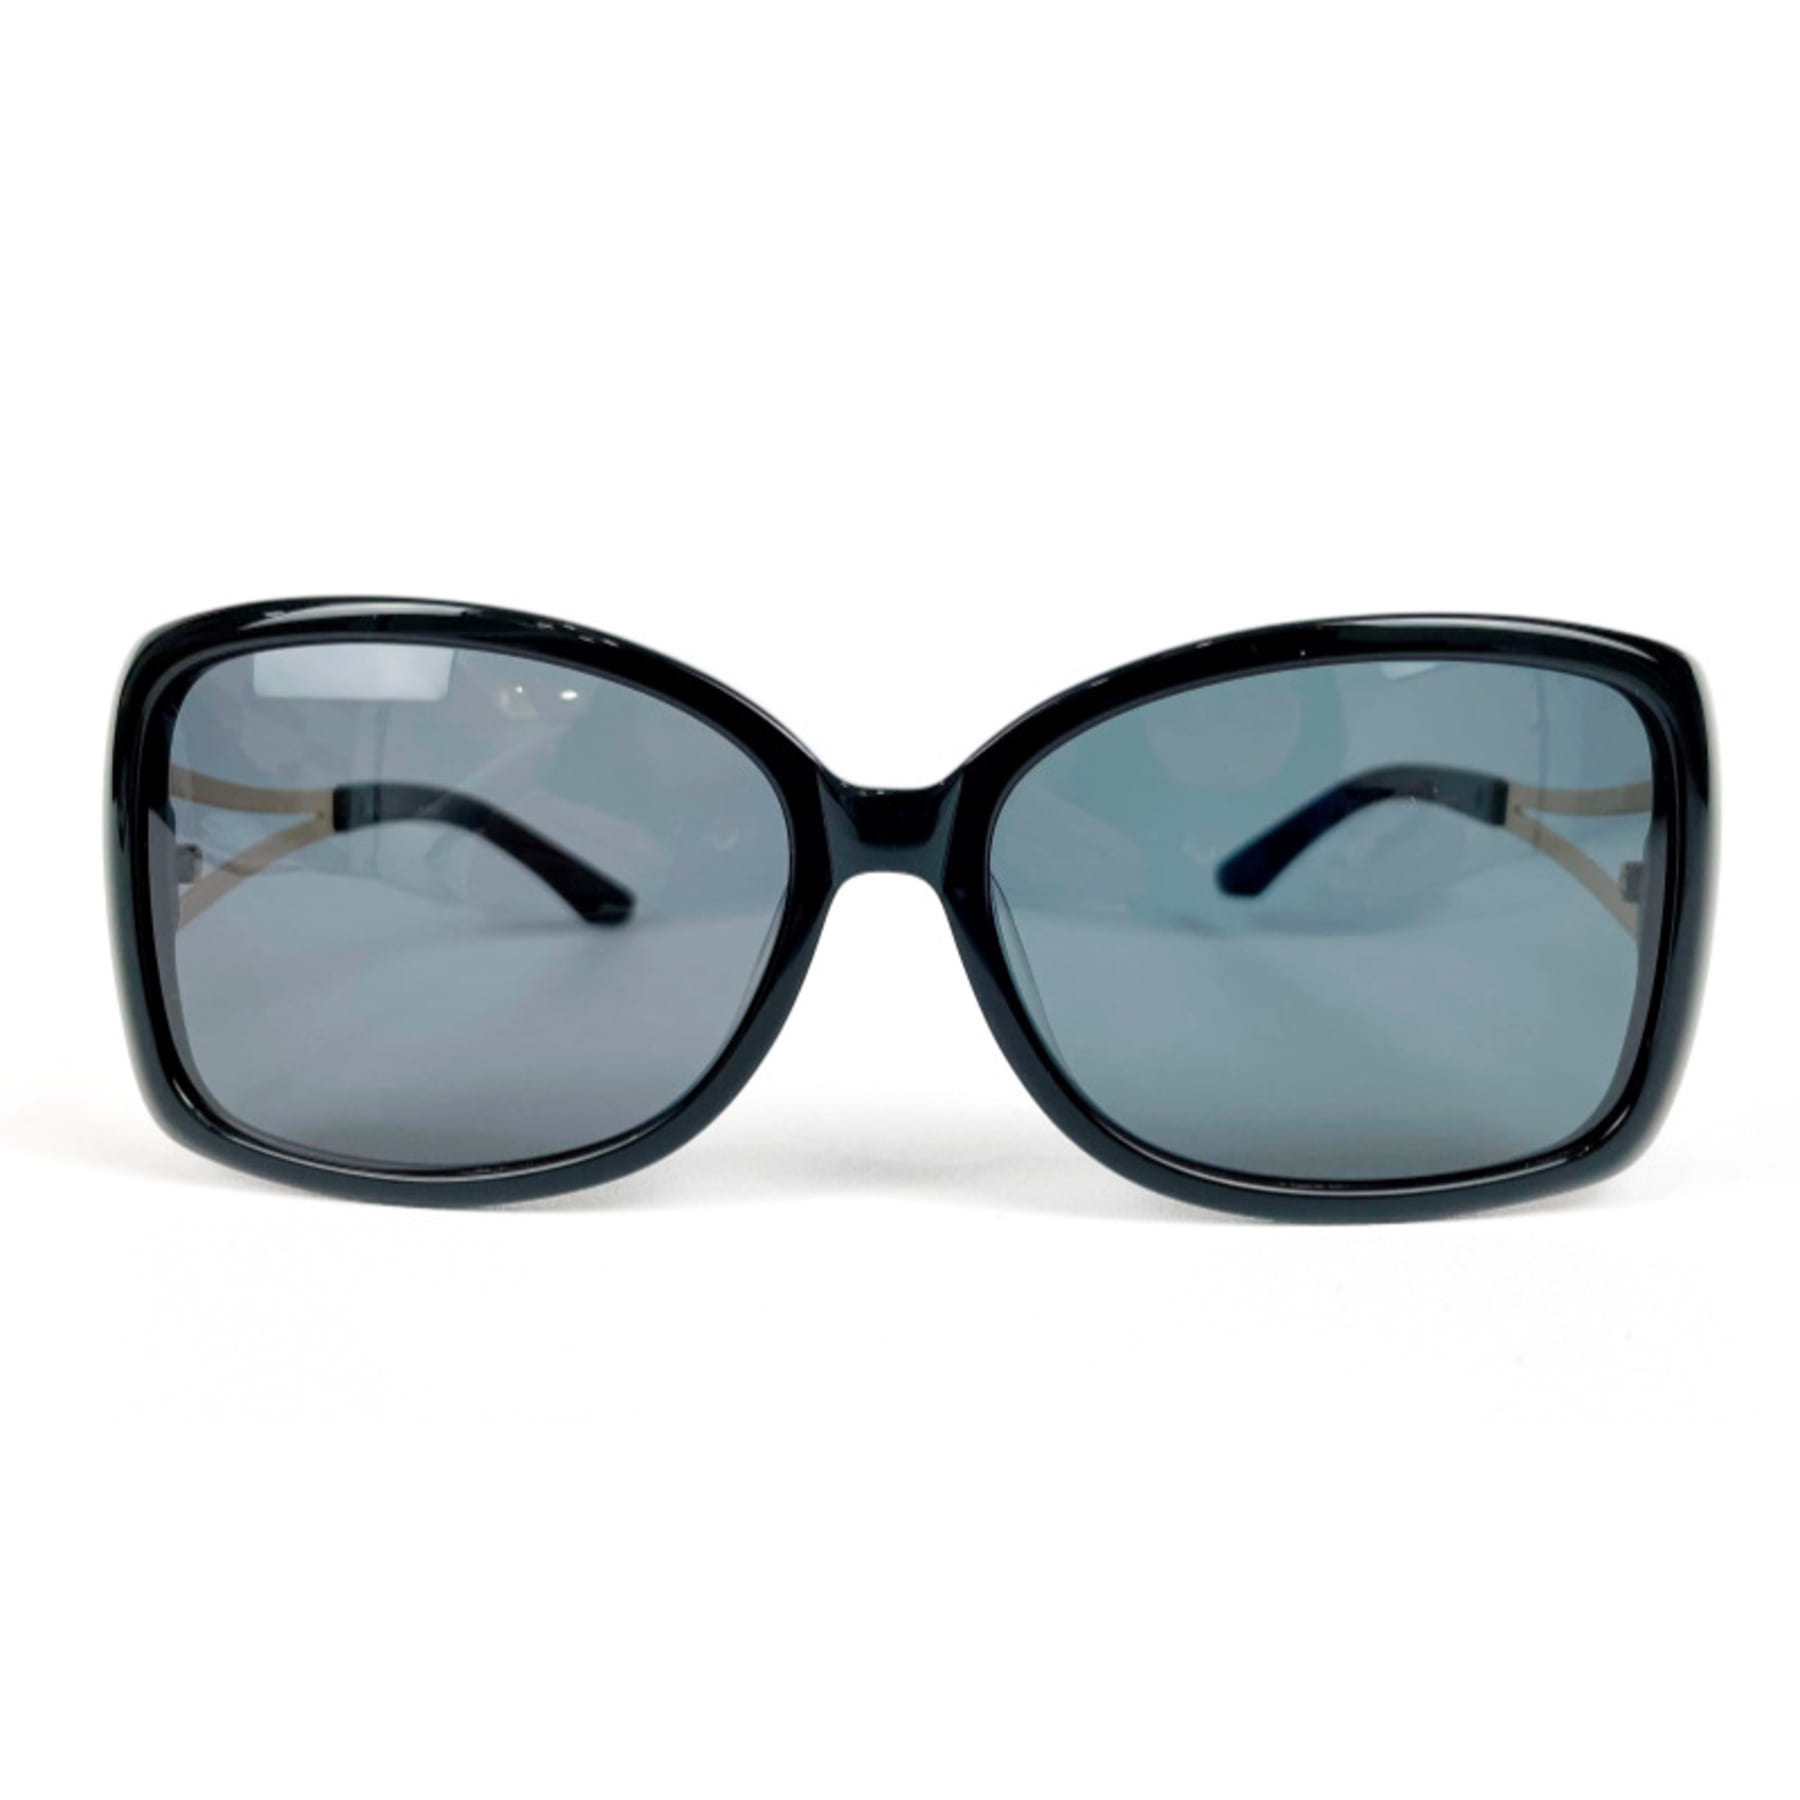 WITHUS W-9134, Korean glasses, sunglasses, eyeglasses, glasses